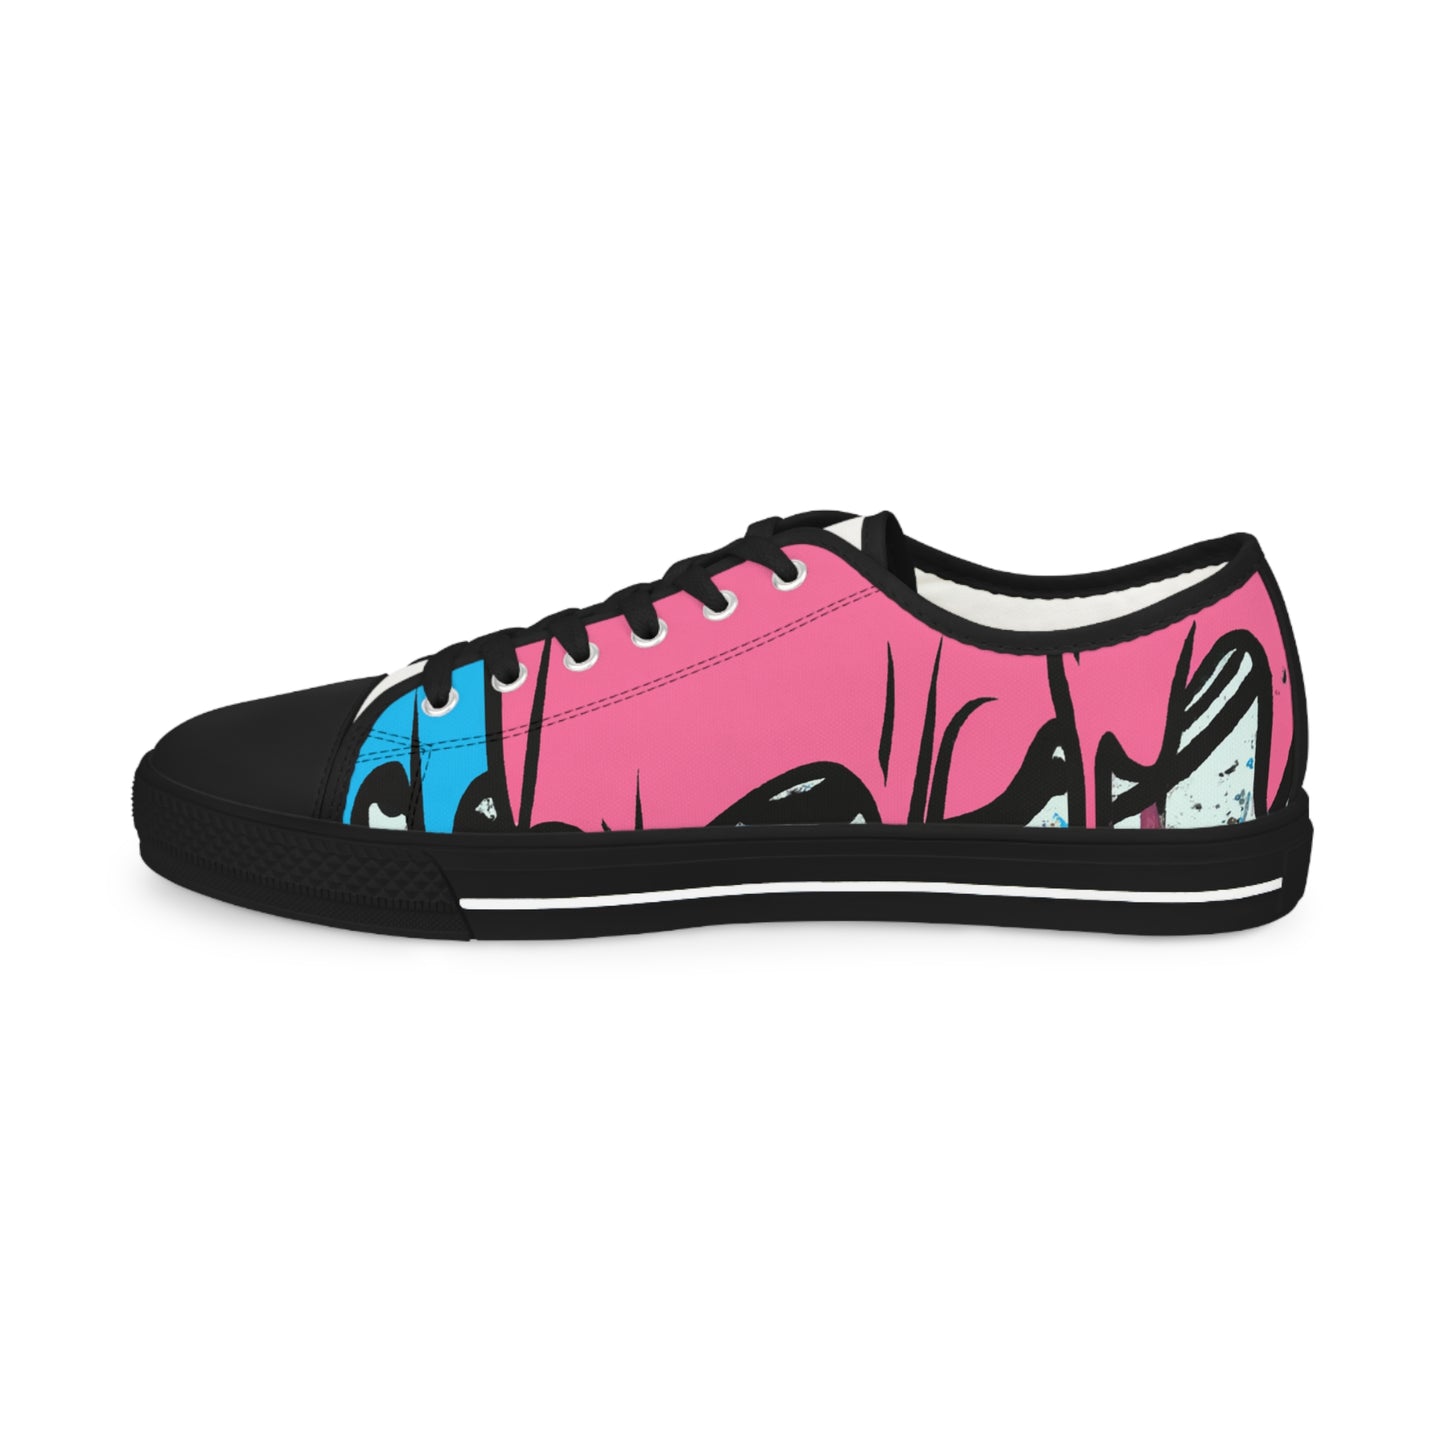 Savonarola Shoenstien - Low Top Shoes